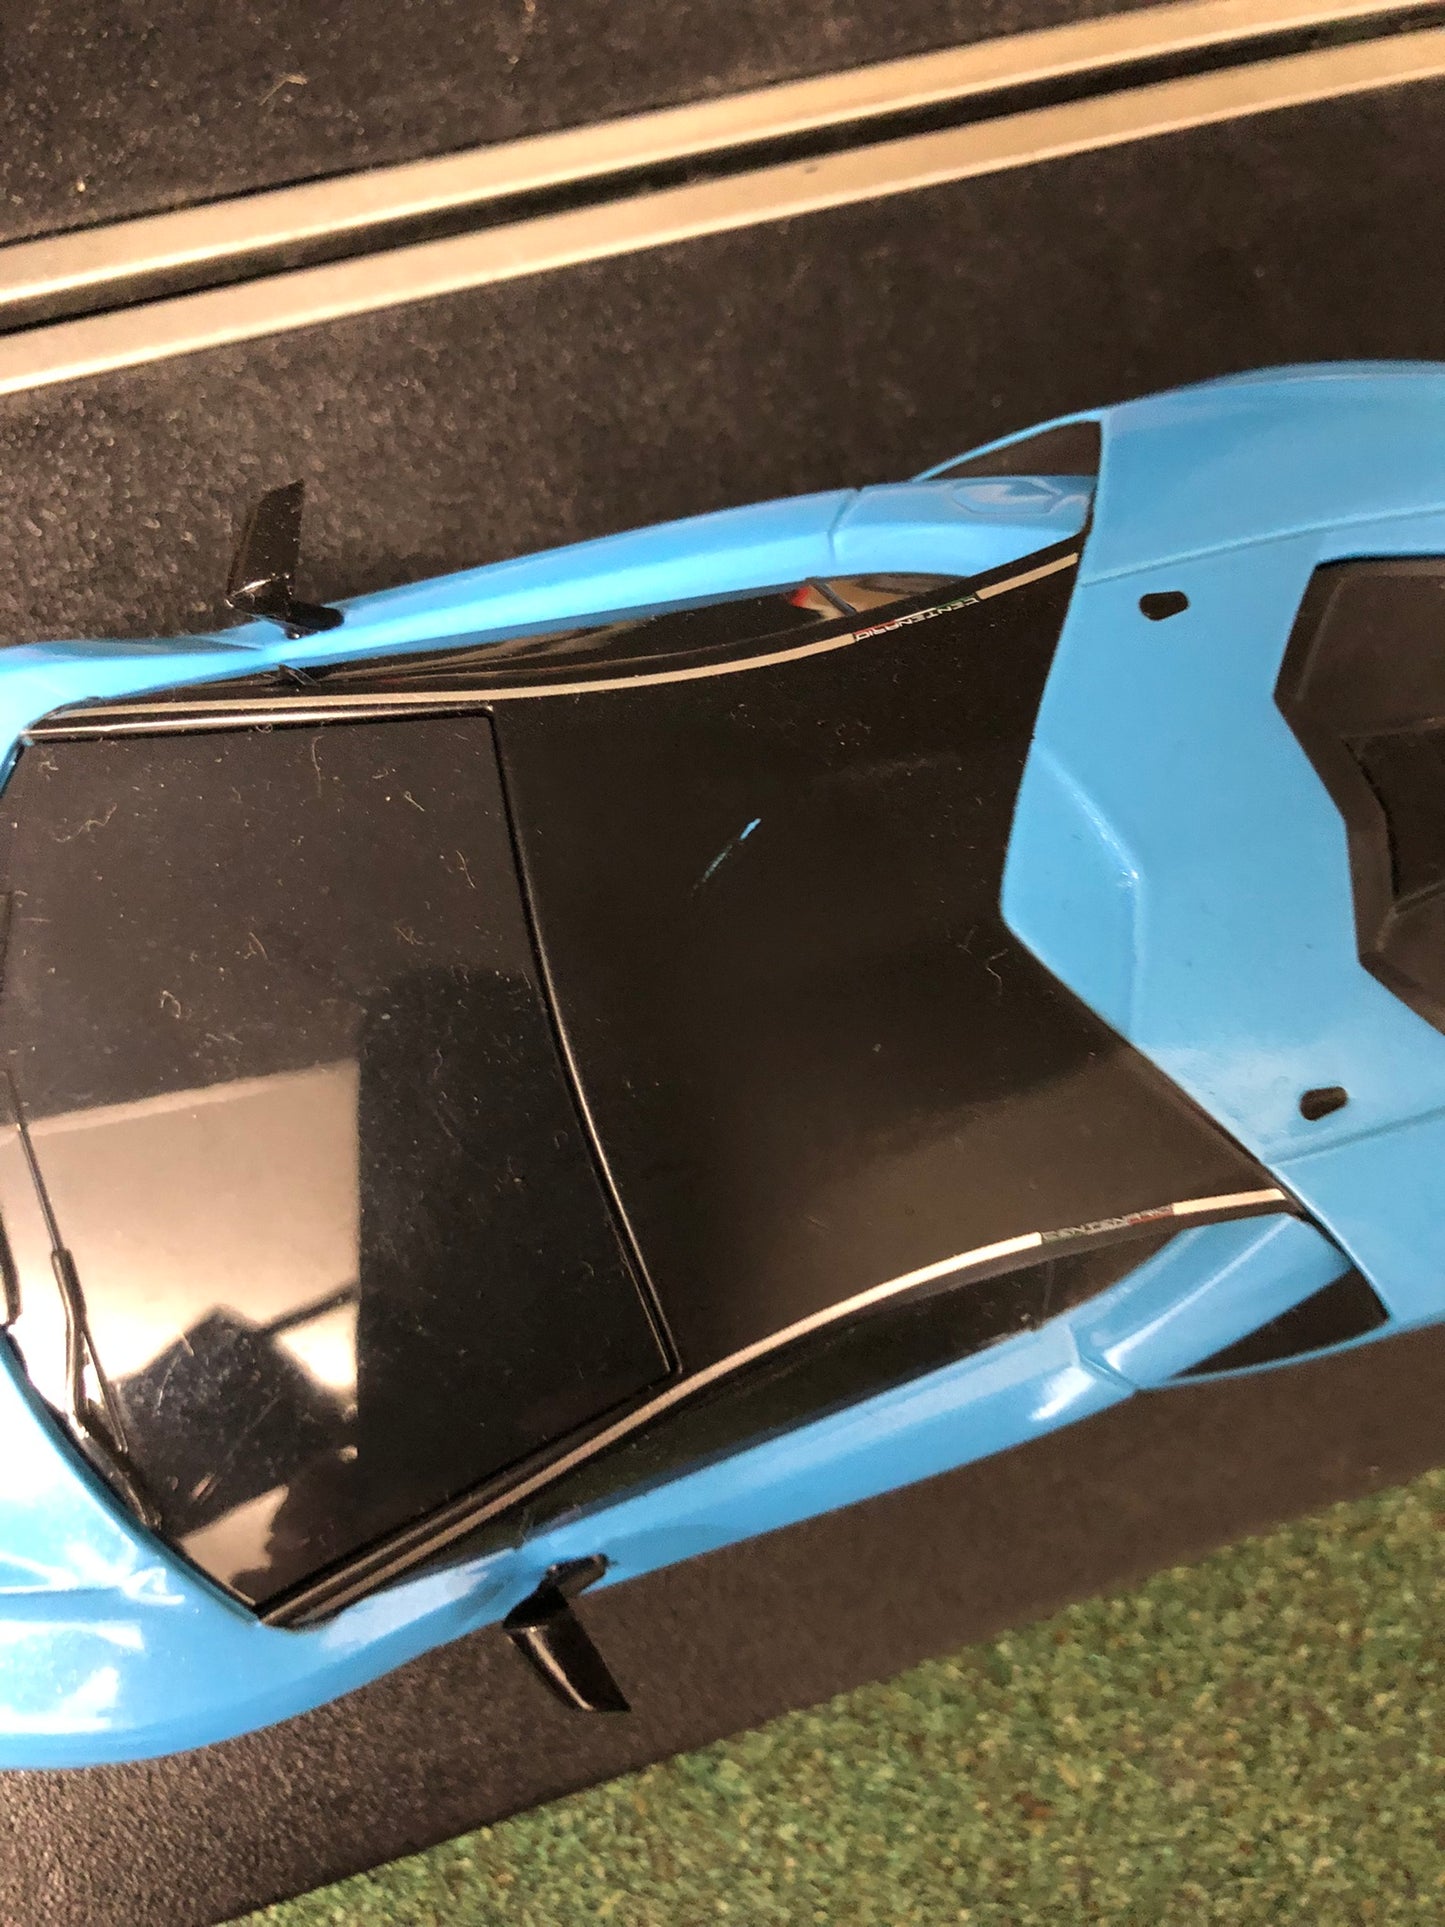 Scalextric 1:32 Car - Blue Lamborghini Centenario #Q